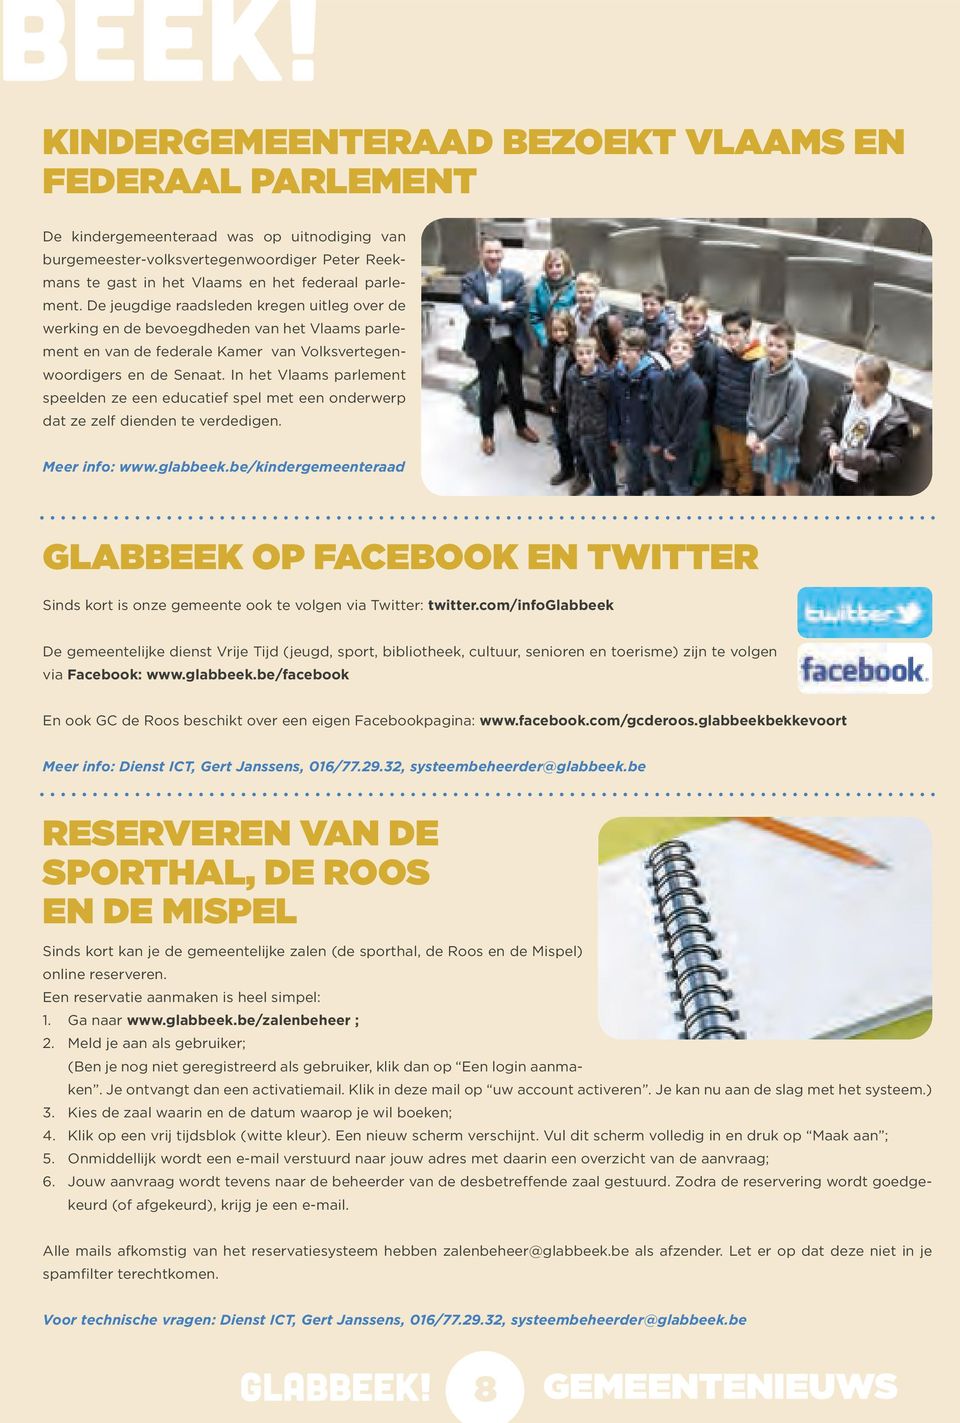 In het Vlaams parlement speelden ze een educatief spel met een onderwerp dat ze zelf dienden te verdedigen. Meer info: www.glabbeek.